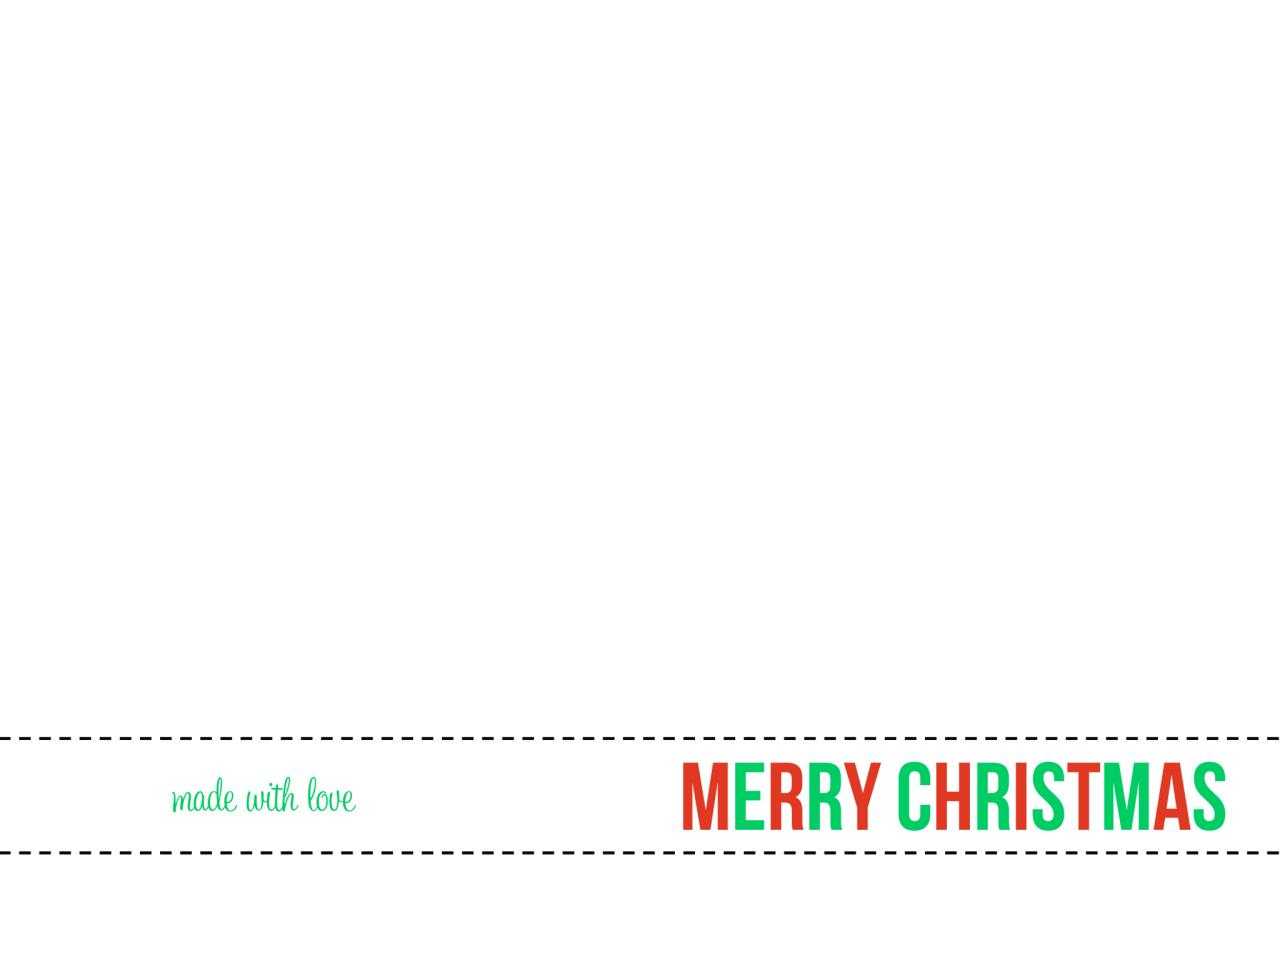 Free Printable Christmas Card Templates For Kids – Christmas For Christmas Note Card Templates